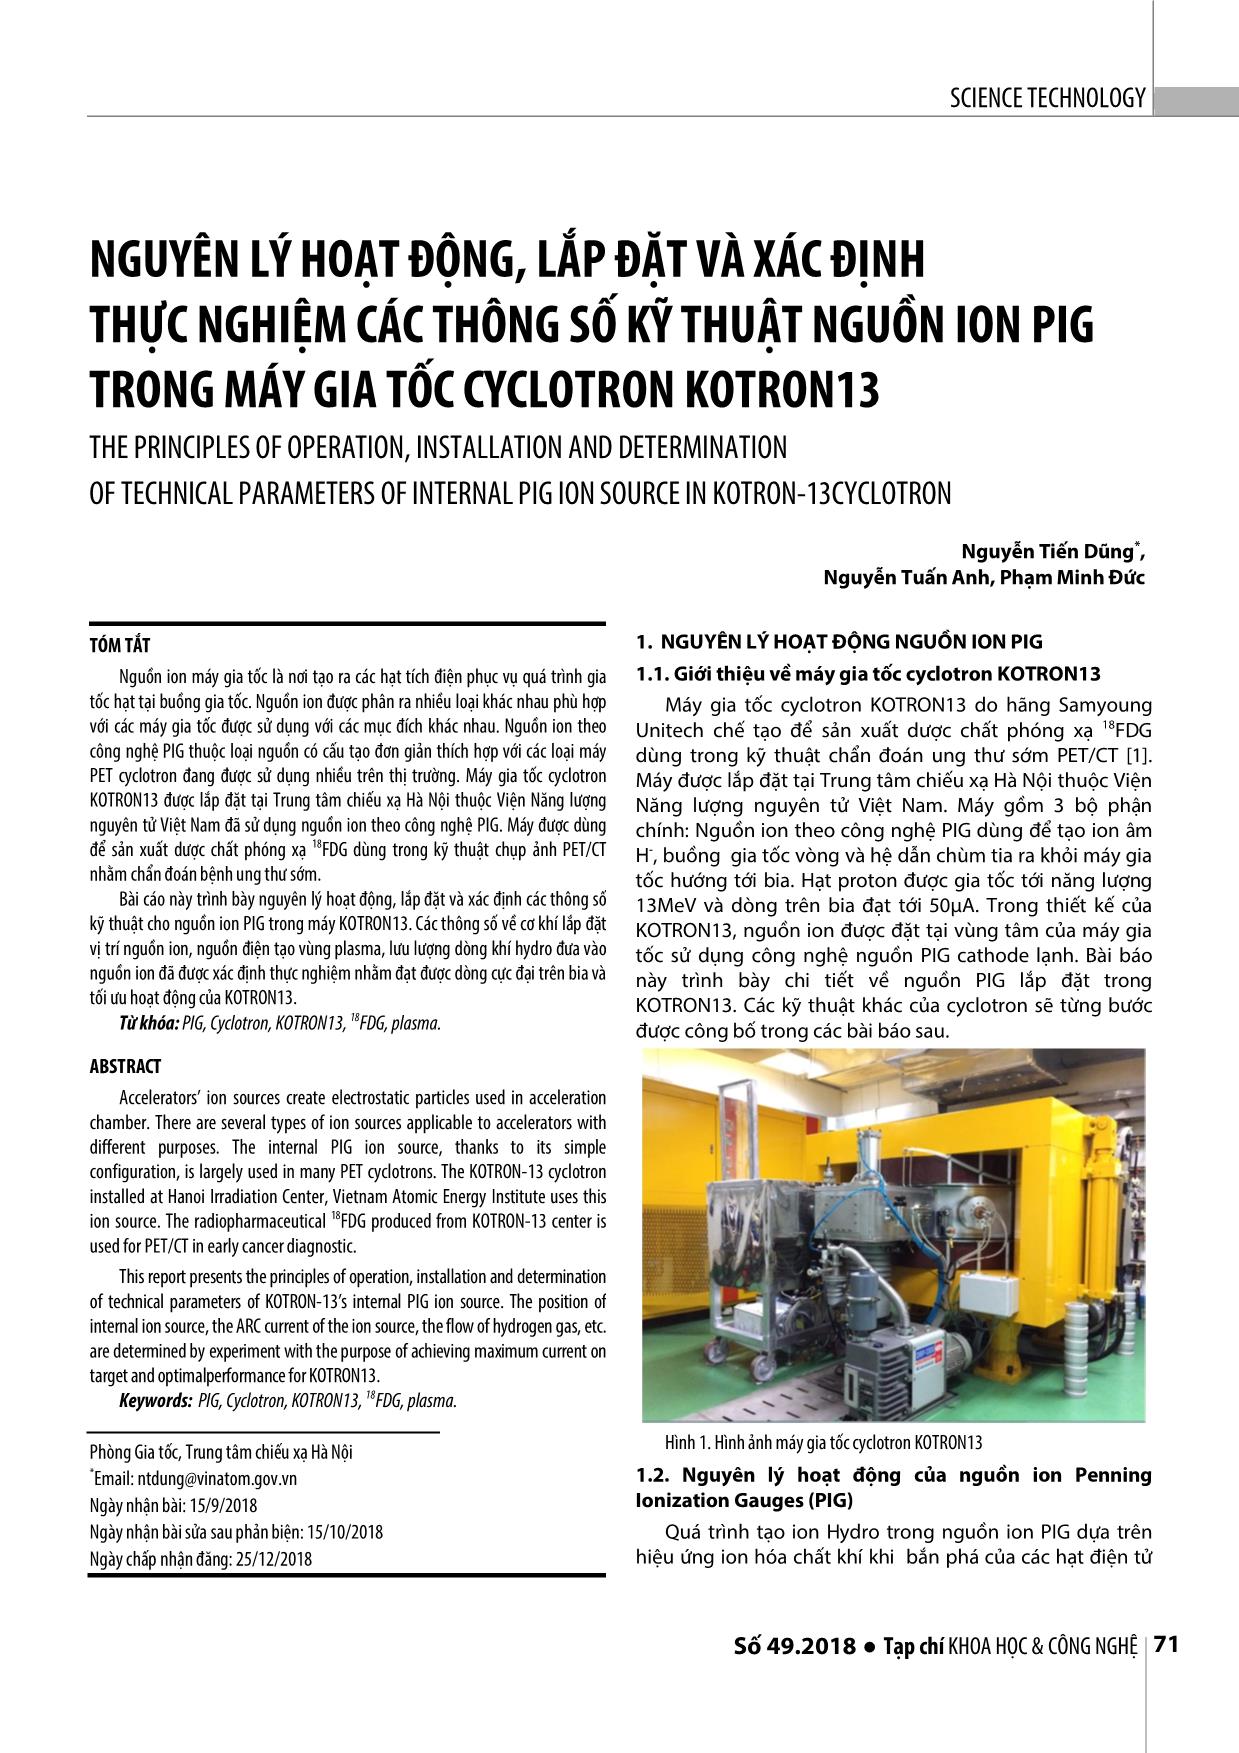 Nguyên lý hoạt động, lắp đặt và xác định thực nghiệm các thông số kỹ thuật nguồn ion pig trong máy gia tốc Cyclotron Kotron13 trang 1